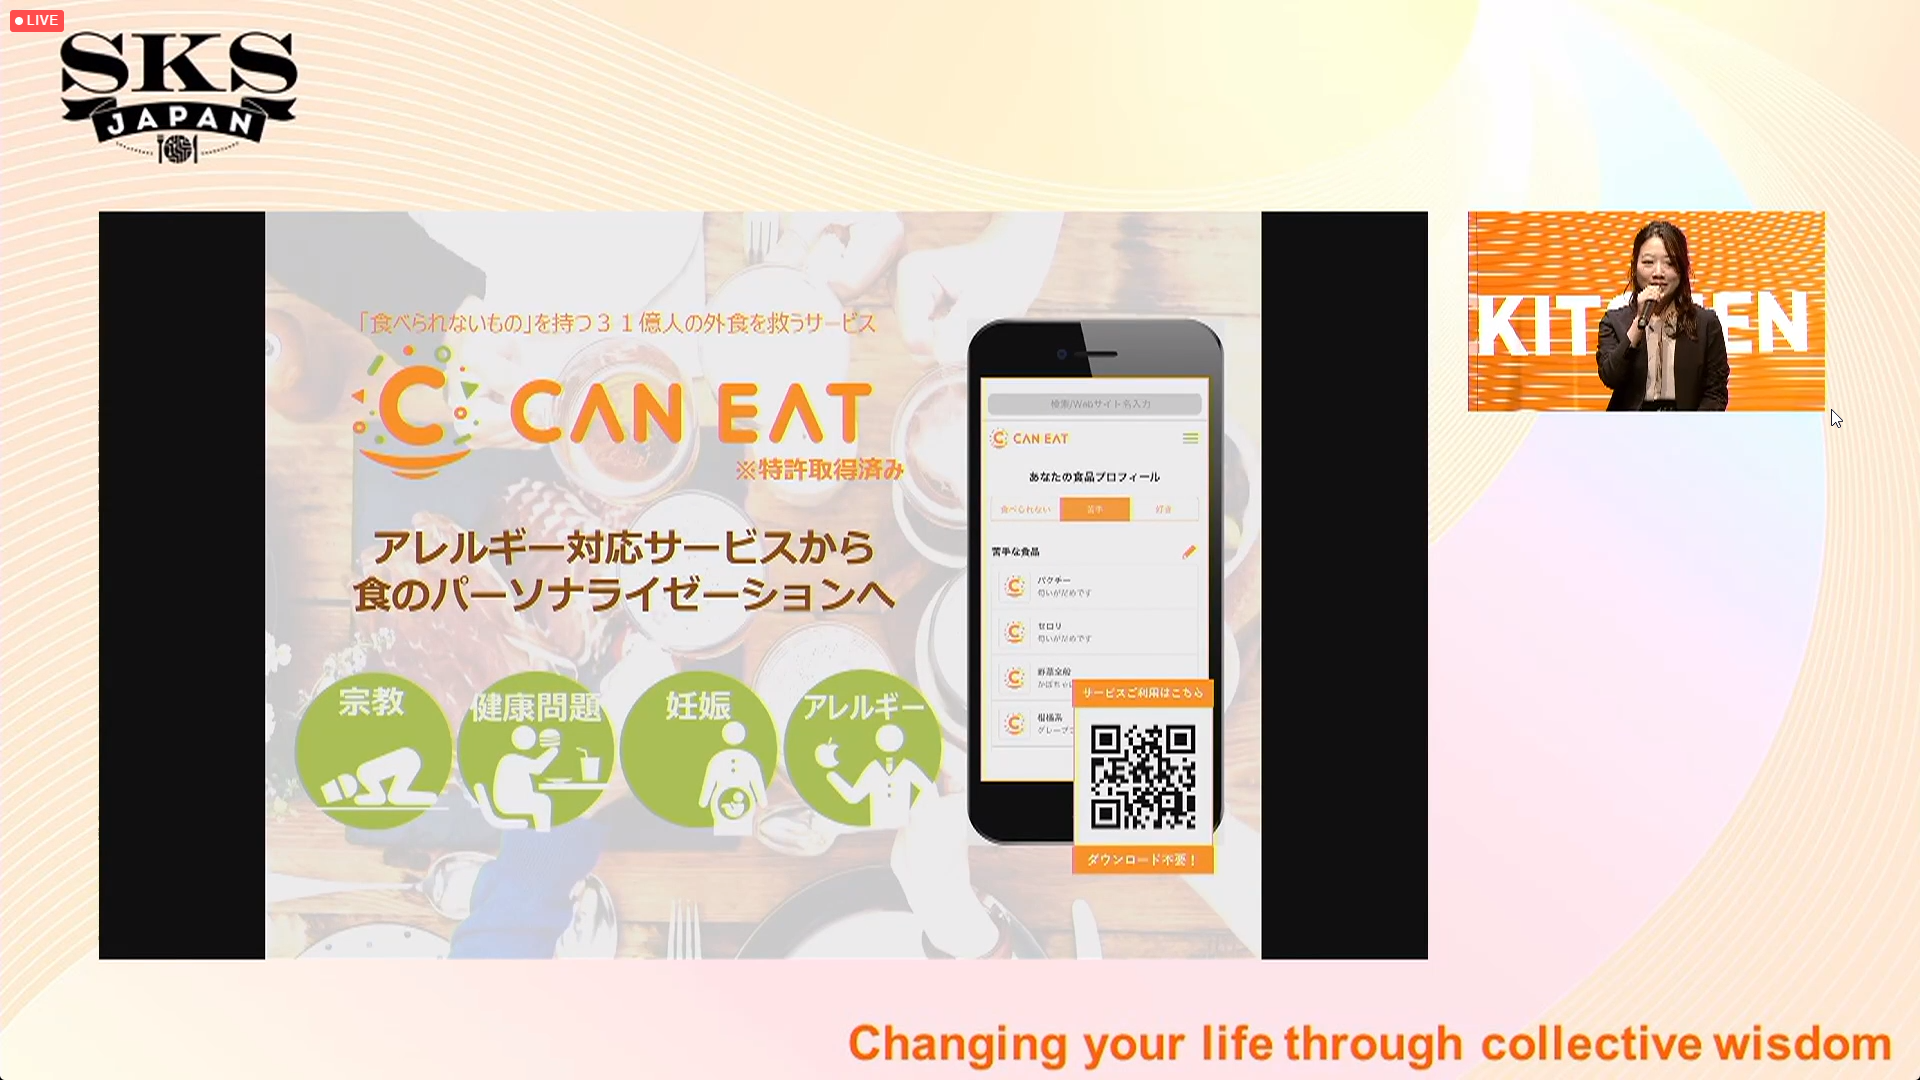 消費者向けにはアレルギー情報をWebで登録してQRコードでシェアできる食事嗜好のプロフィールサービス「CAN EAT」を提供している